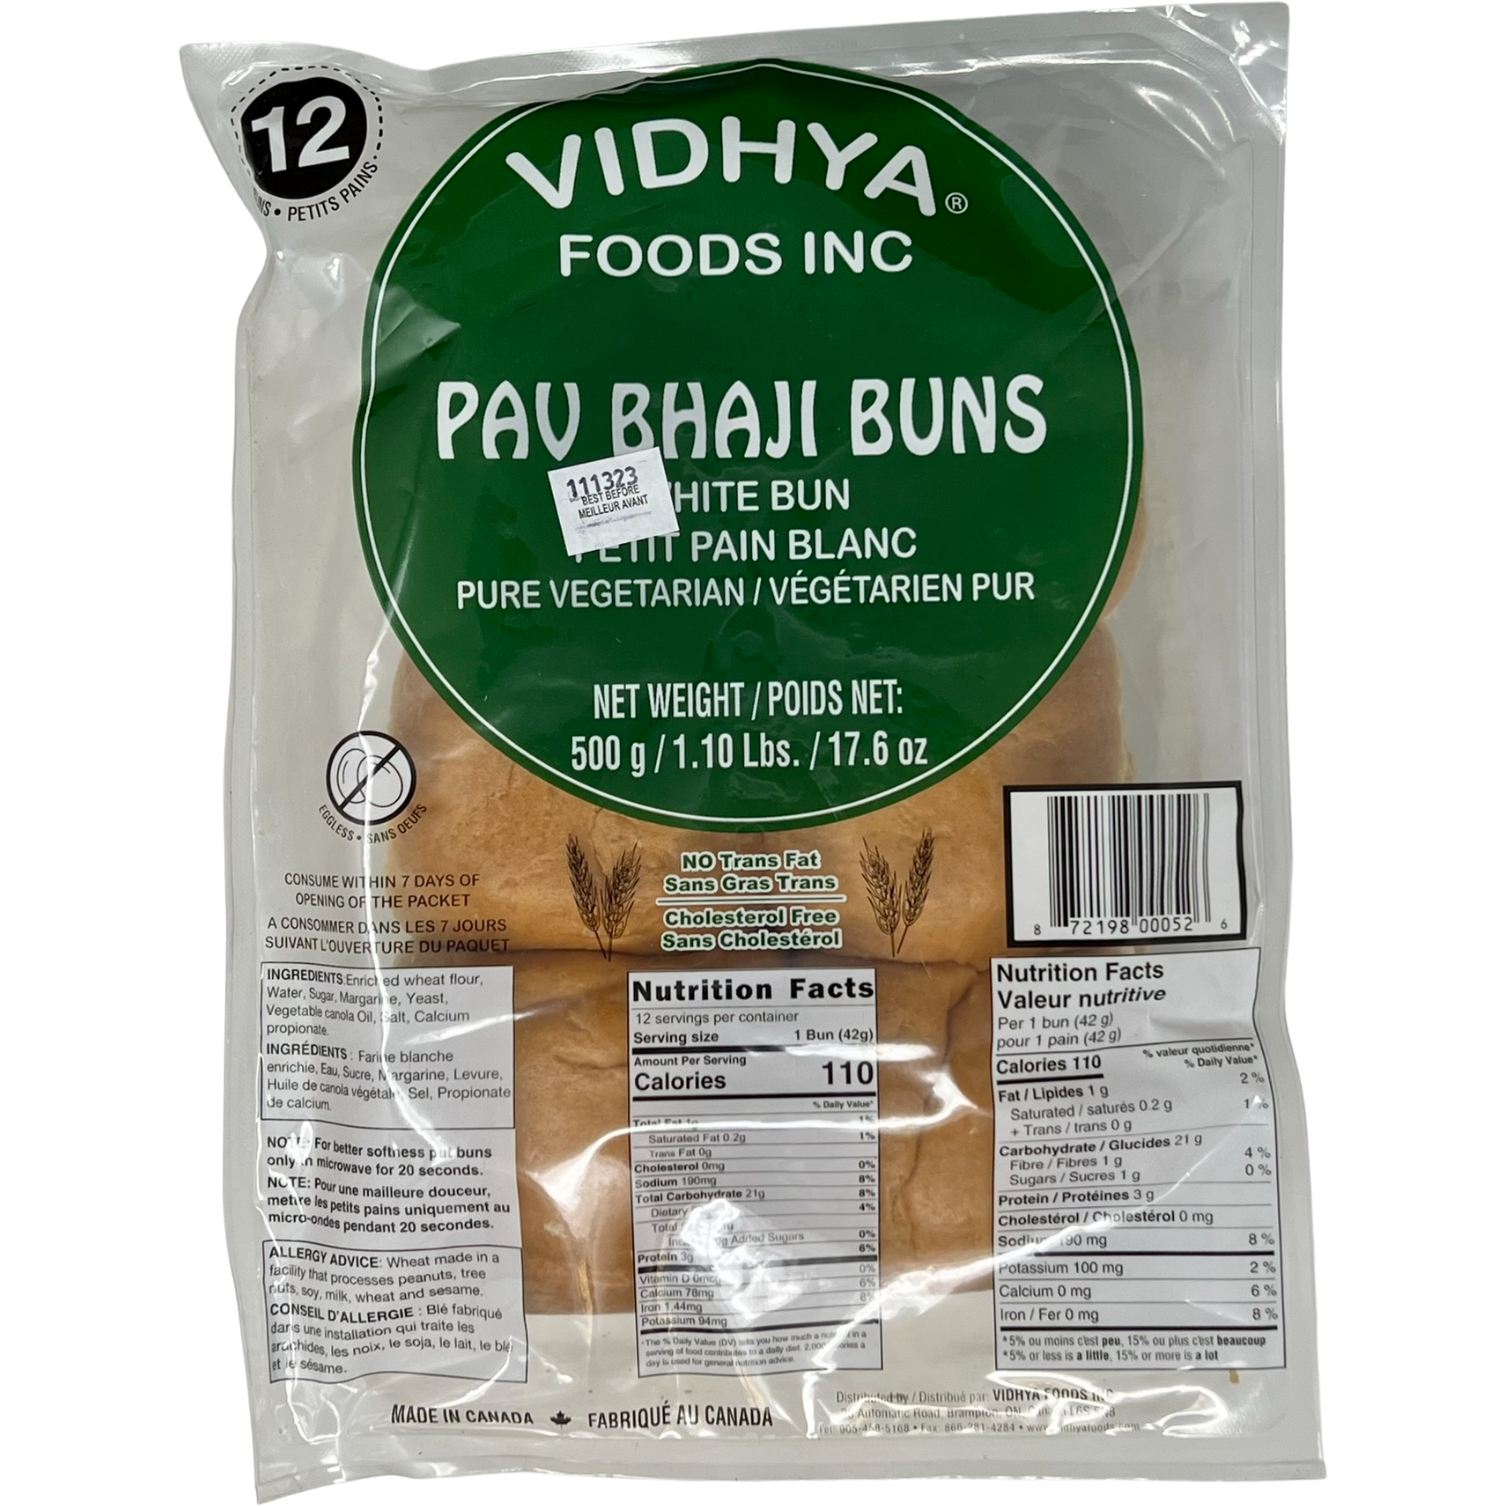 Vidhya Pav Bhaji Buns 12 Pc - 500 Gm (1.10 Lb)